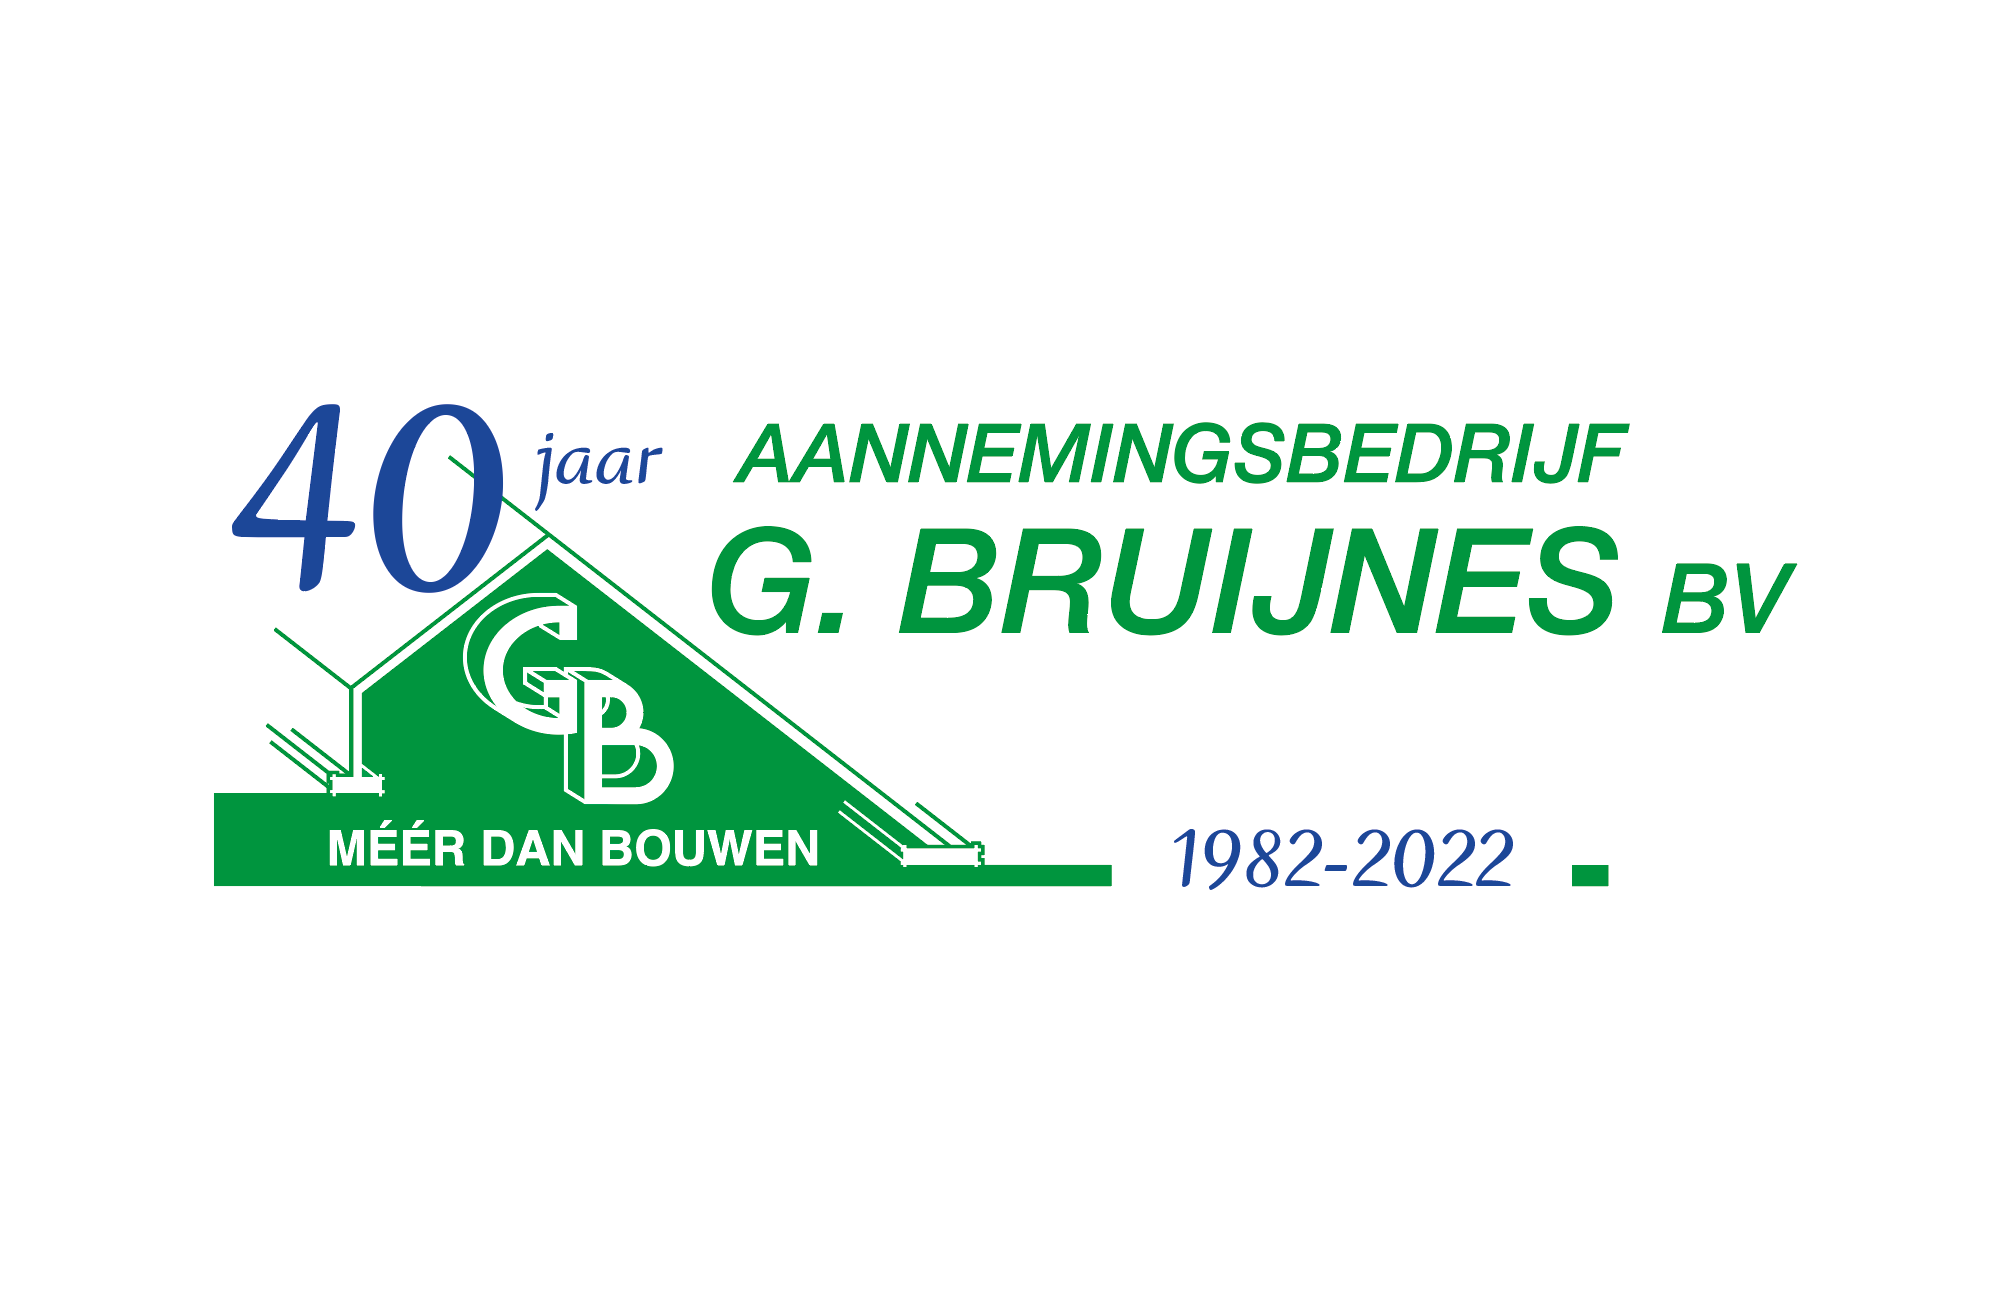 Jubileum 40 jaar! -  project van Aannemingsbedrijf G. Bruijnes